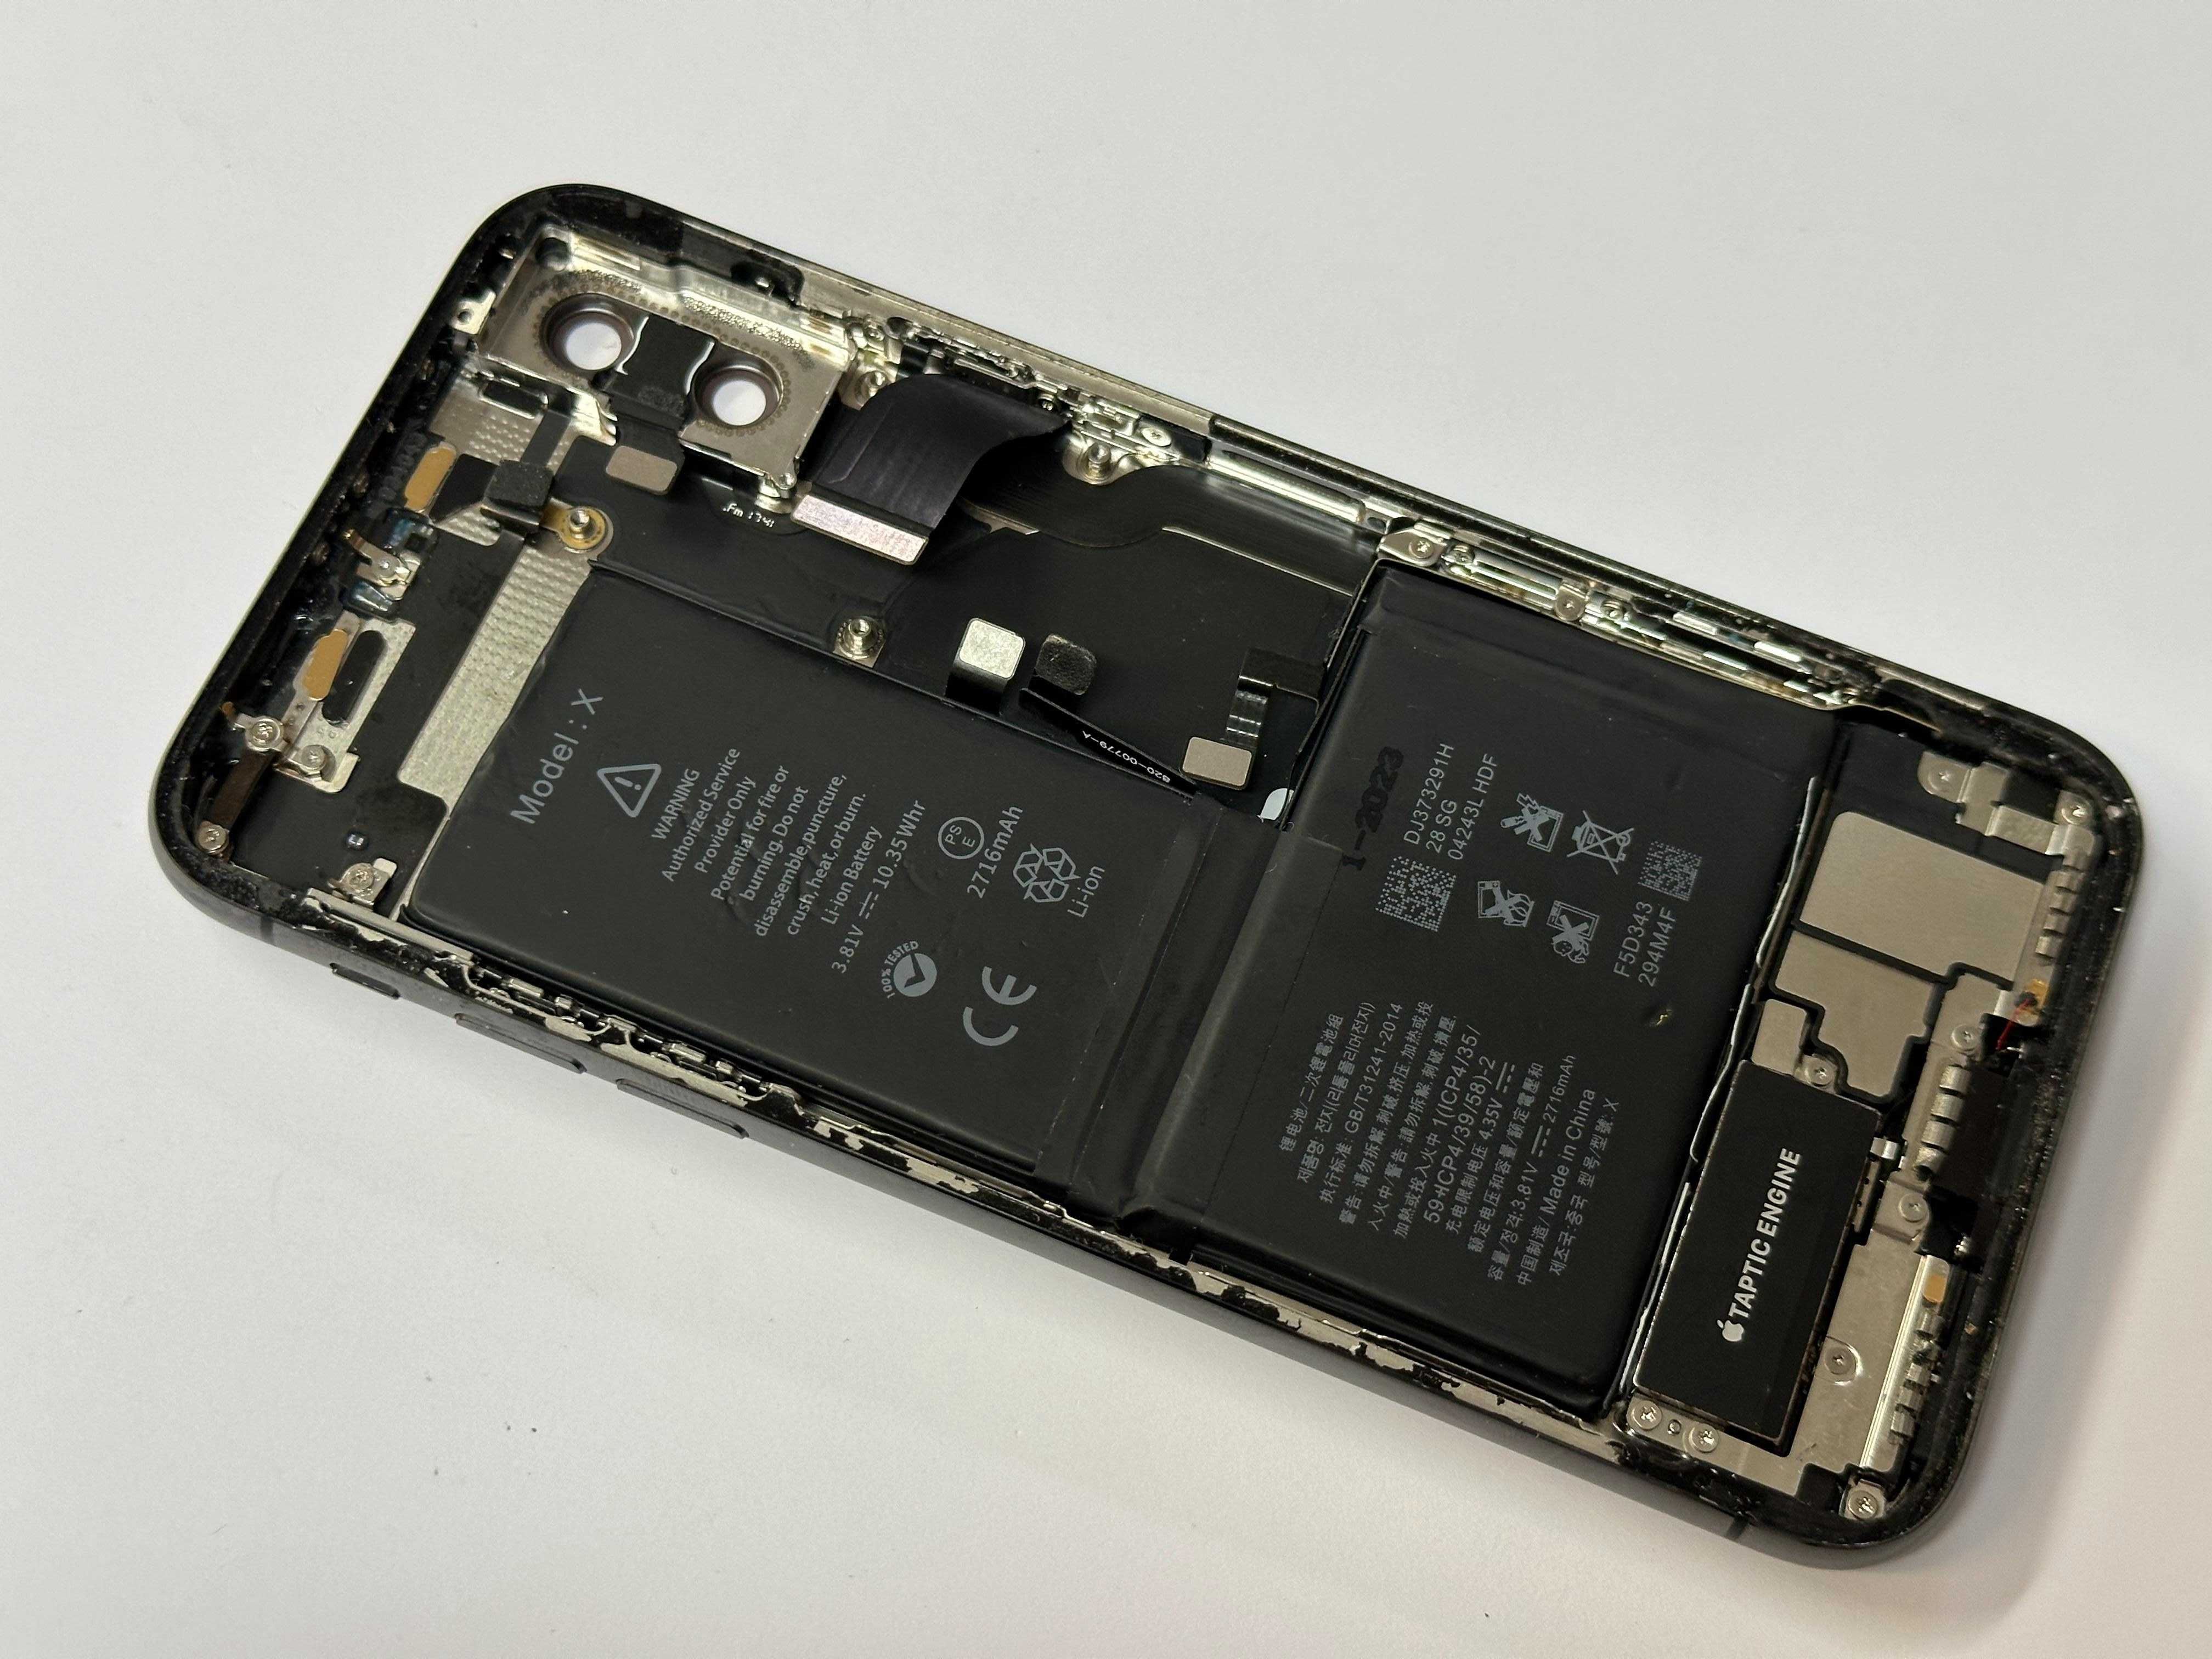 Obudowa korpus z taśmami oryginał demontaż iPhone X #43